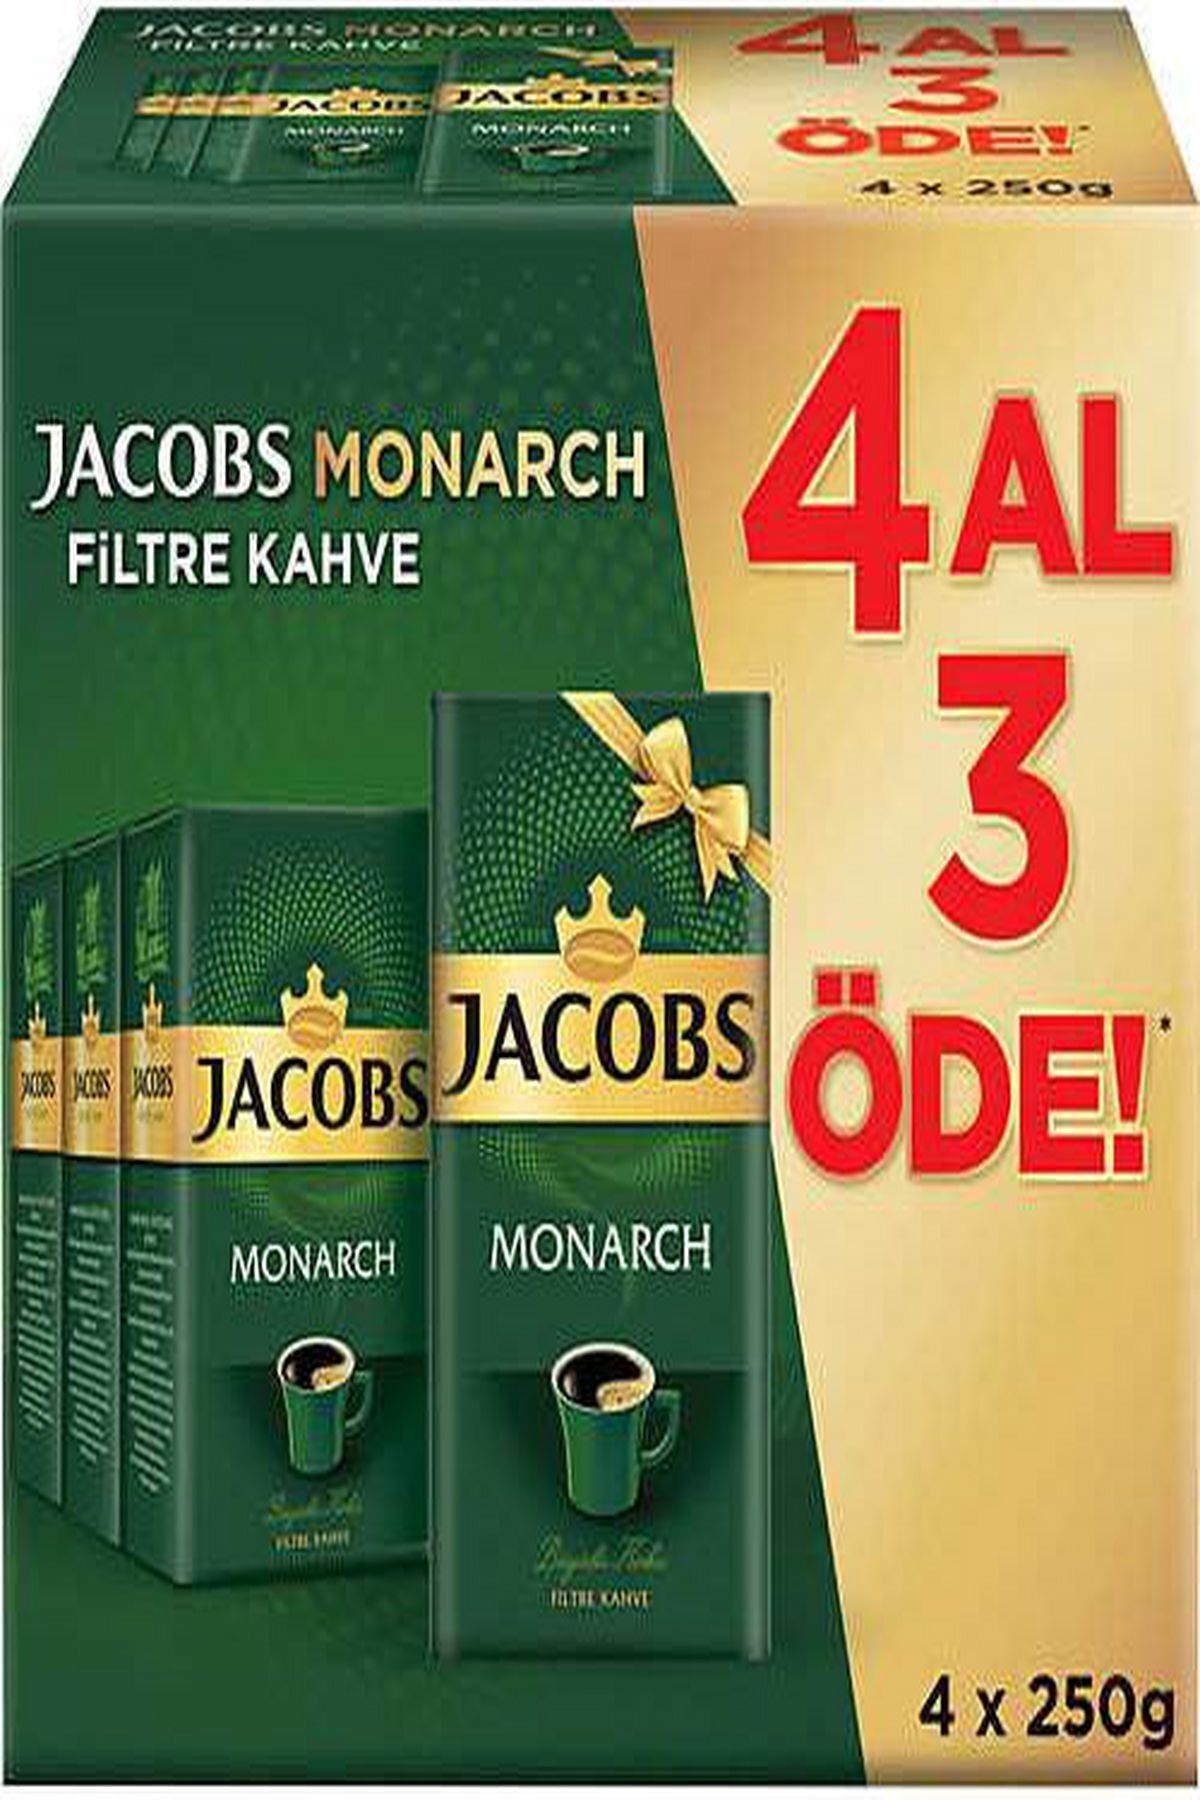 Jacobs Monarch Filtre Kahve 250 Gr 4 Al 3 Öde